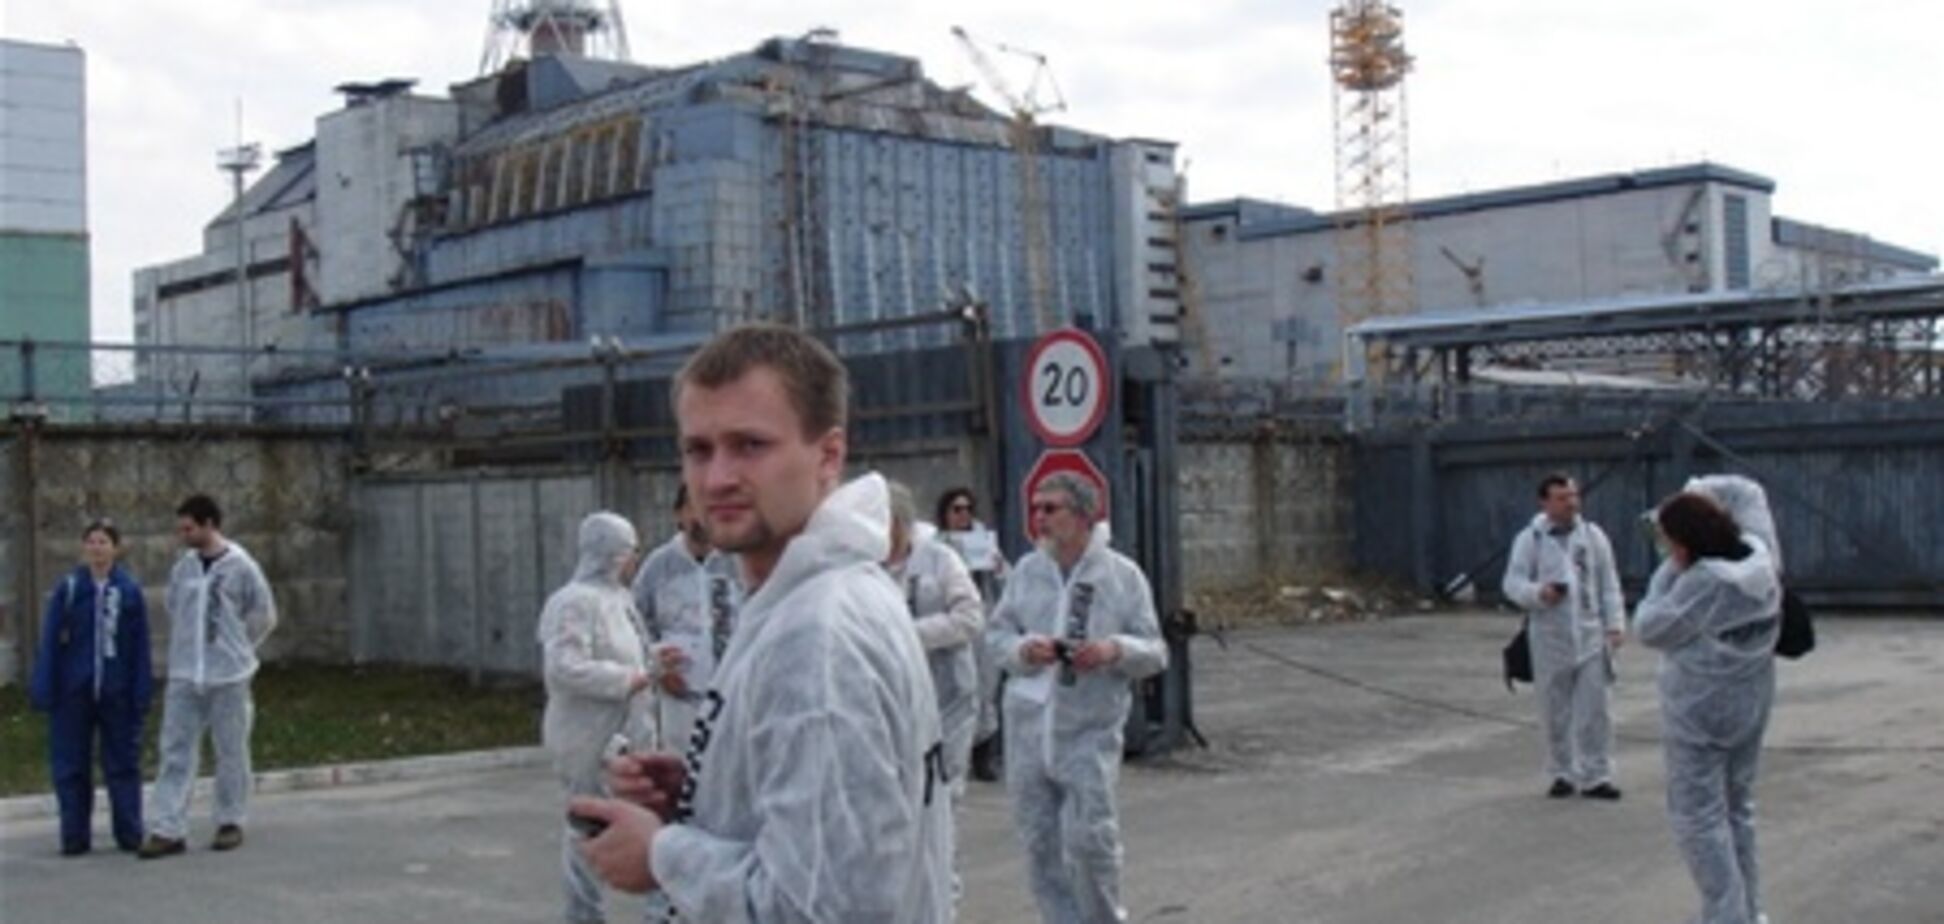 Le Figaro: Чернобыль – 25 лет спустя дозиметр зашкаливает 